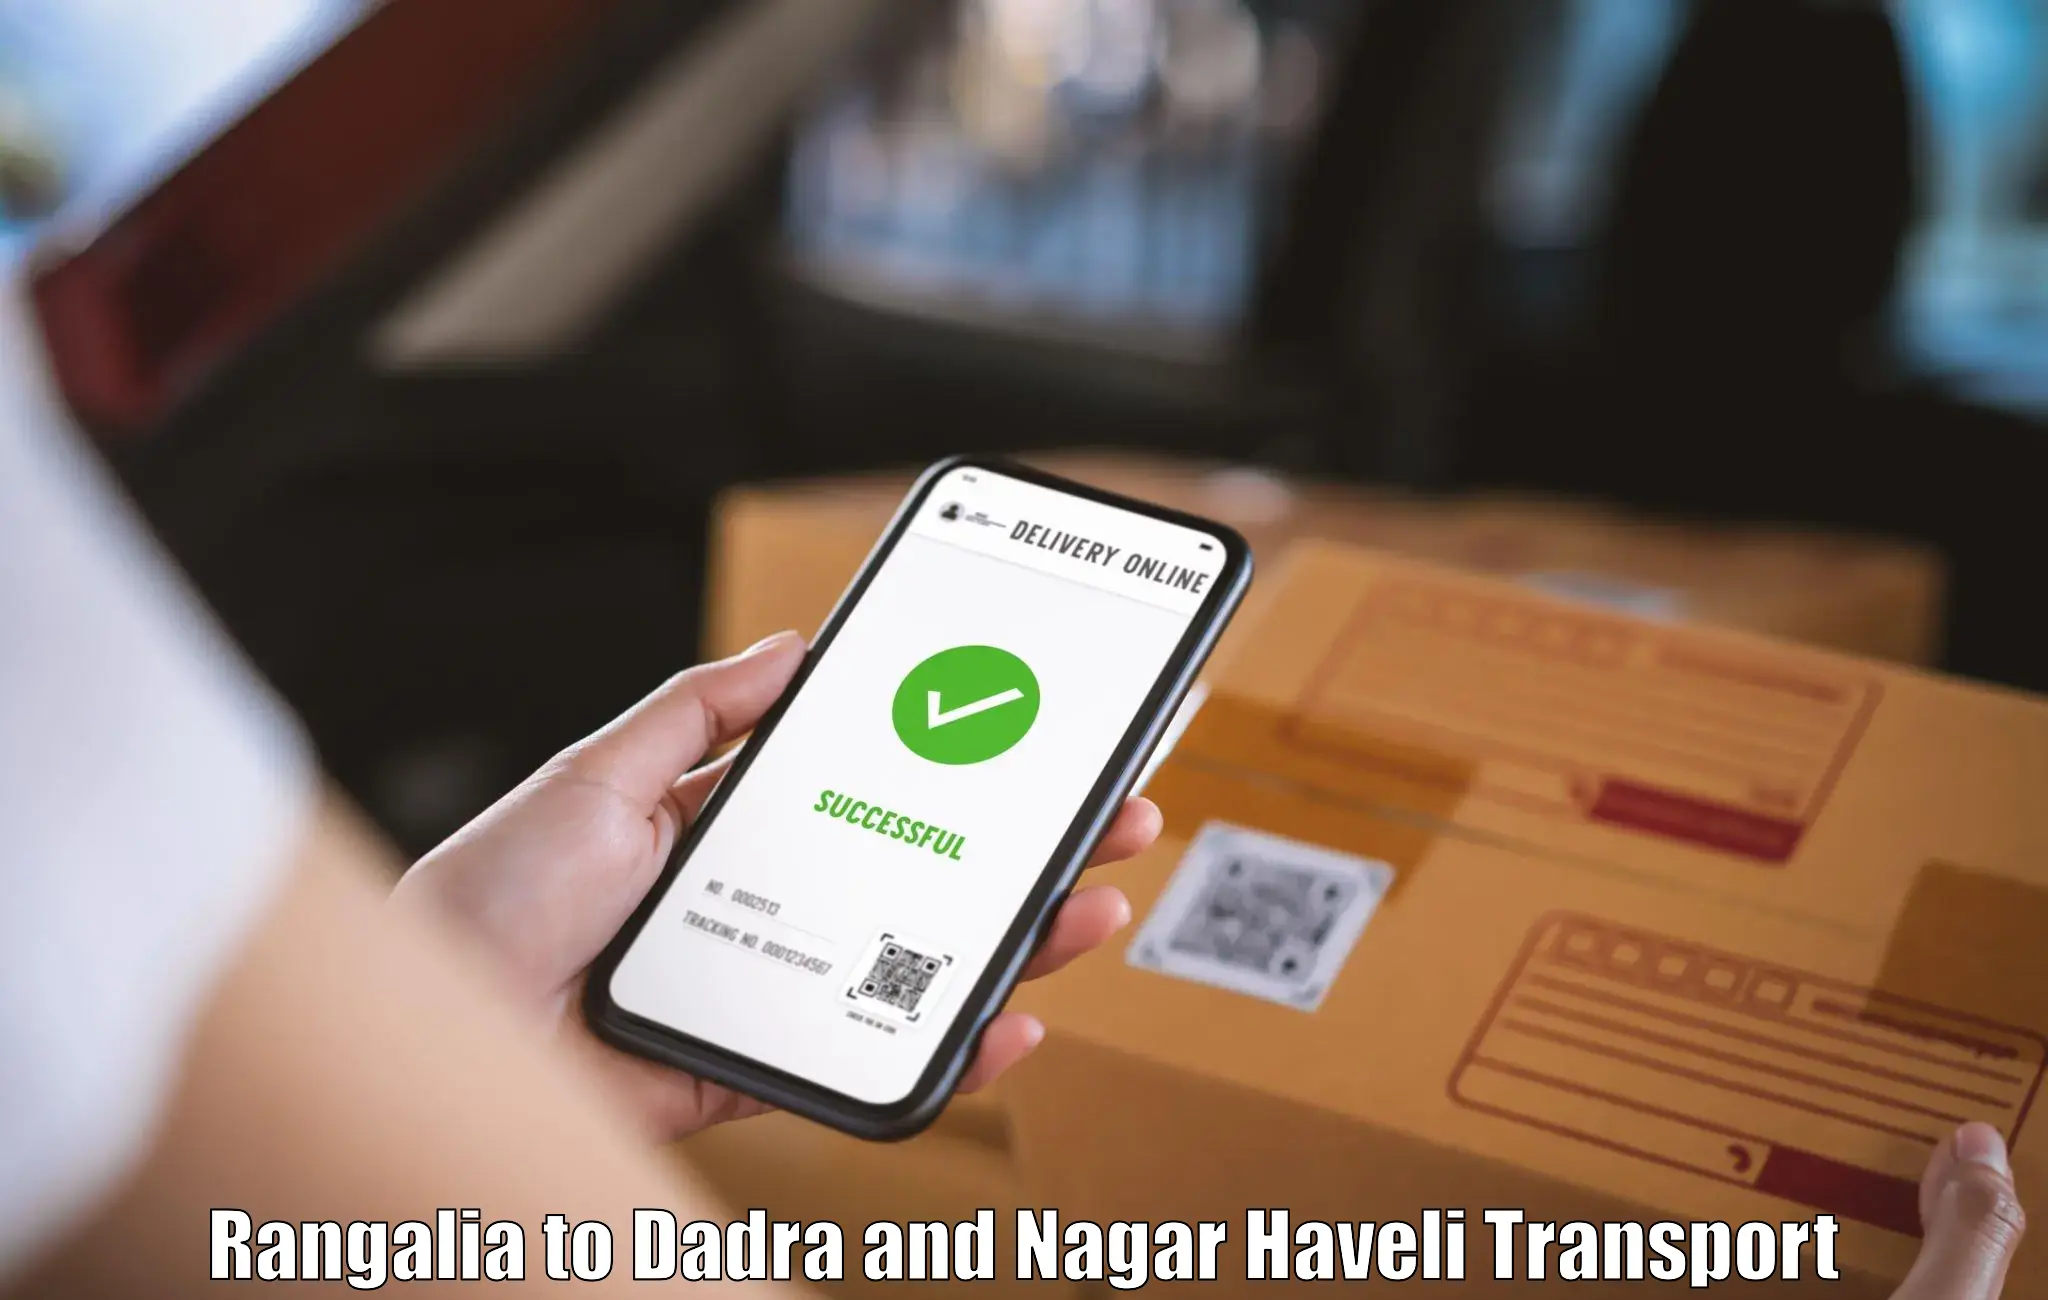 Transport in sharing Rangalia to Dadra and Nagar Haveli